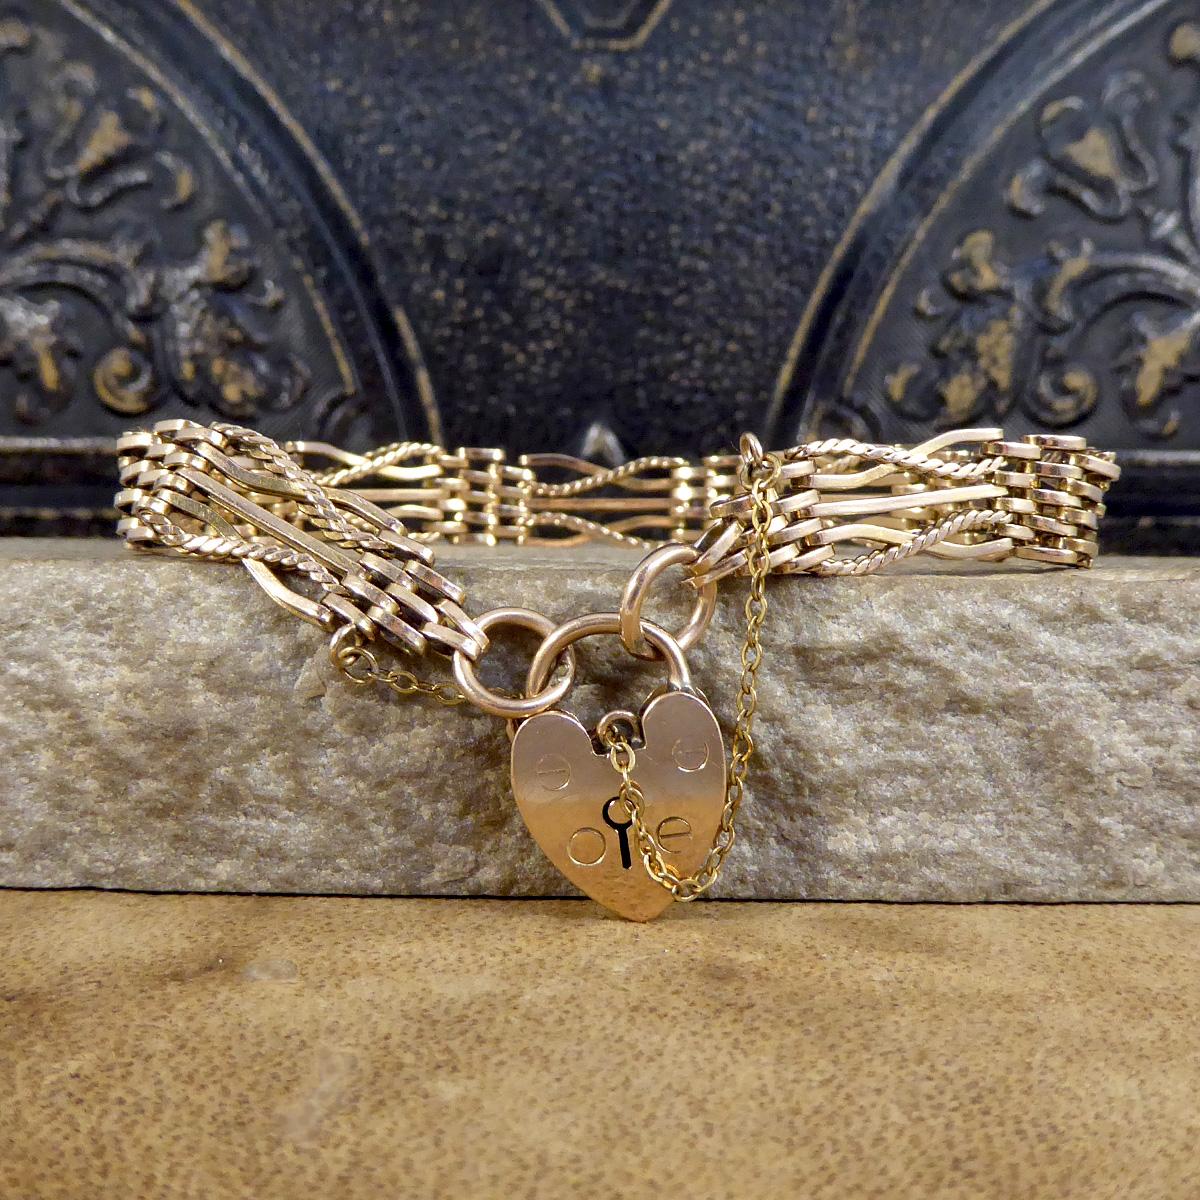 Ein antikes Tor-Armband aus 9-karätigem Gold mit einer leichten Roségoldfärbung. Das Torarmband besteht aus fünf Stäben: einem geraden Stab in der Mitte, zwei gedrehten Stäben, einem einfachen und einem seilartigen Stab. Die Rückseite des Armbands